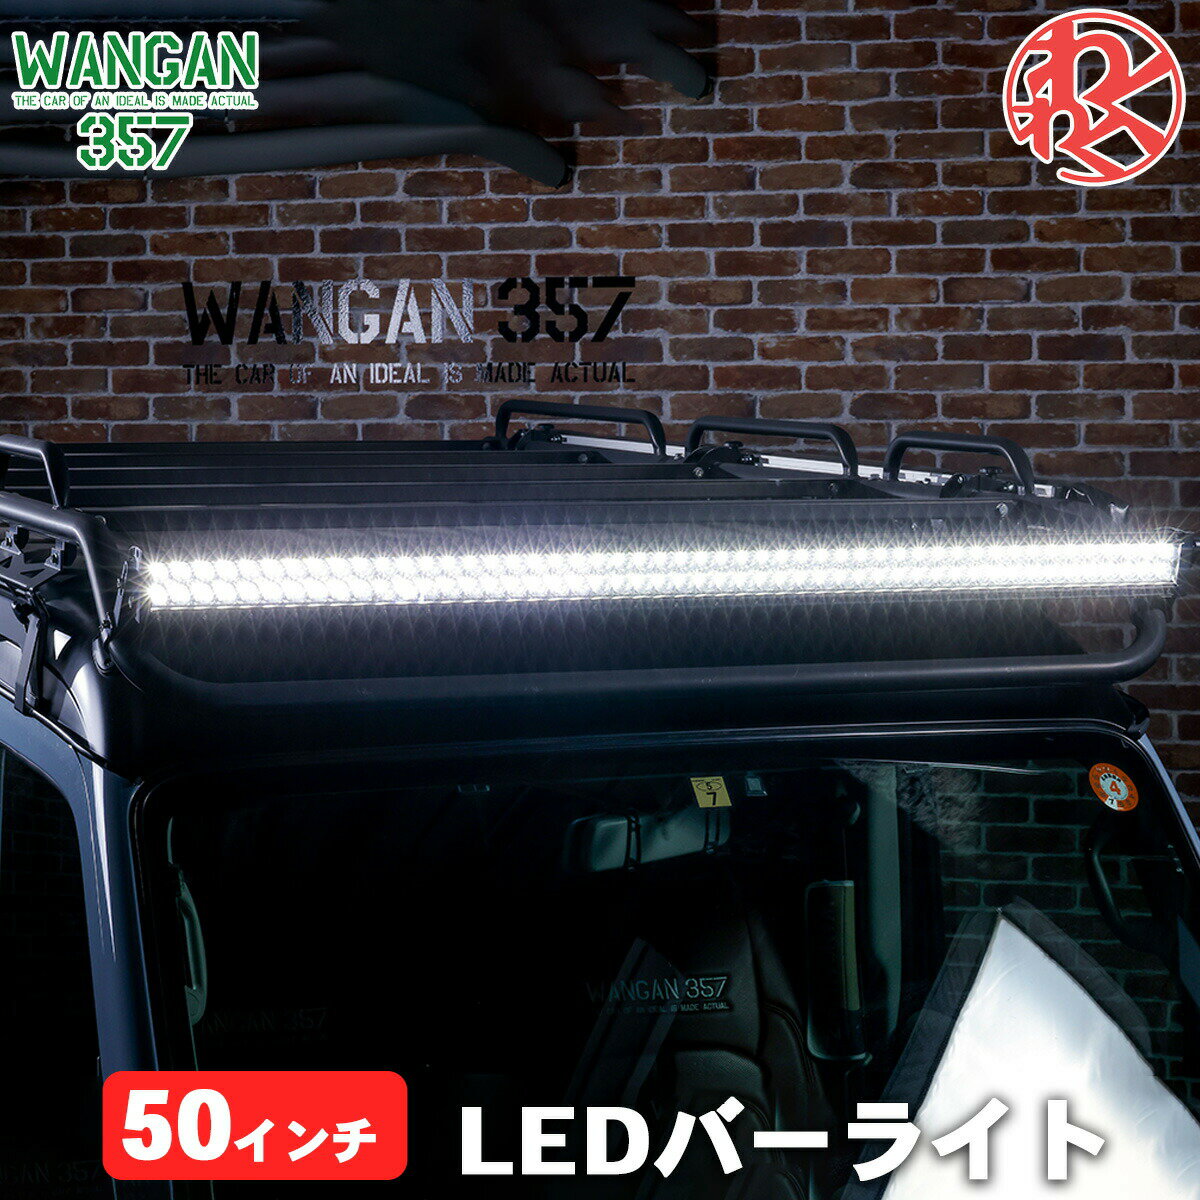 5W LED 車 のヘッド ライト 用の カラフル な タイヤ ホイール バルブ 警告 灯 装飾 ランプ 4個。